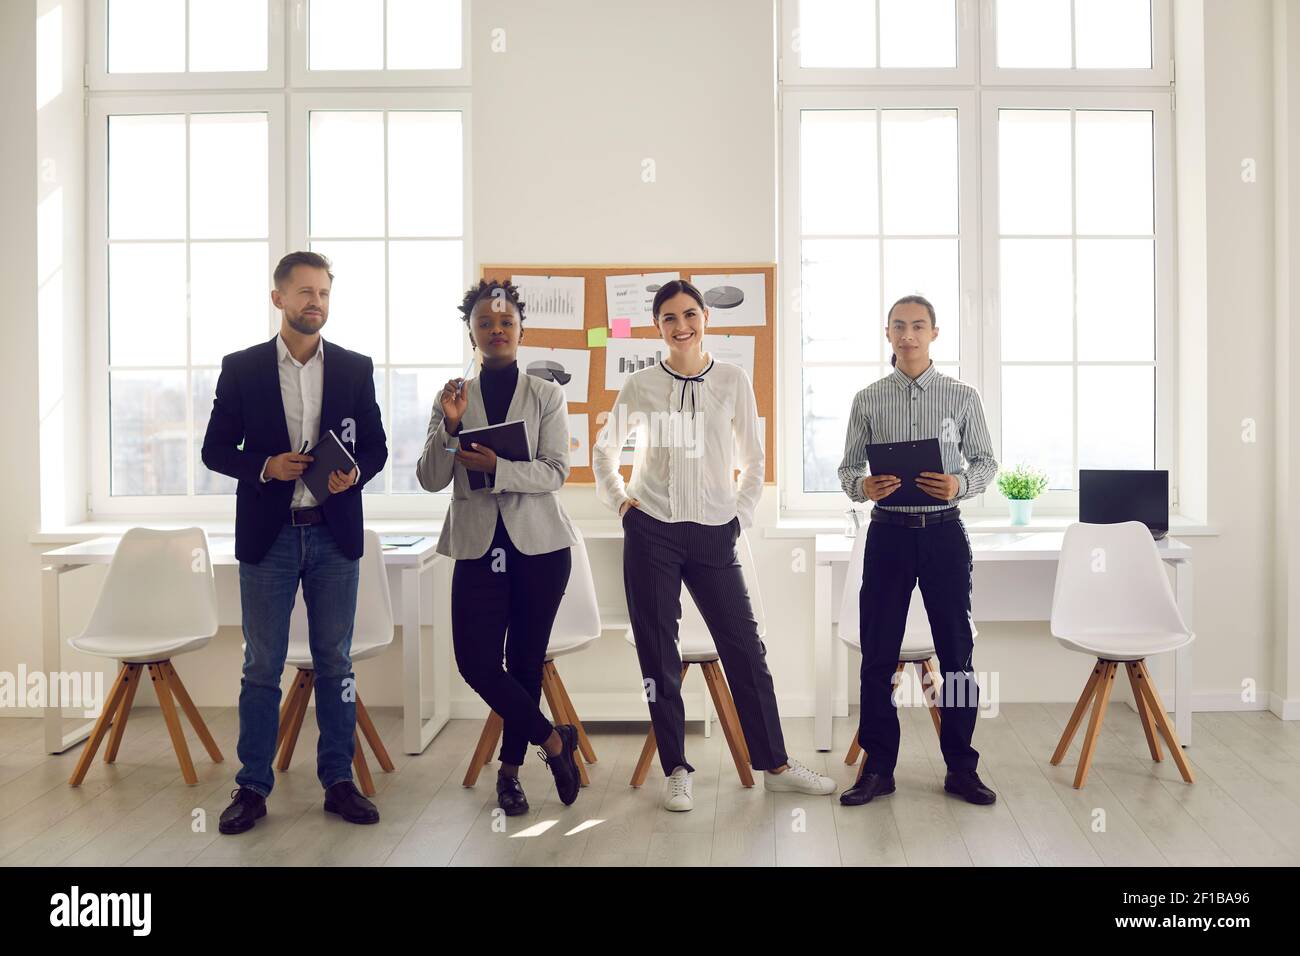 Portrait de groupe d'employés de bureau multiraciaux qui se posent devant l'appareil photo dans le bureau. Banque D'Images